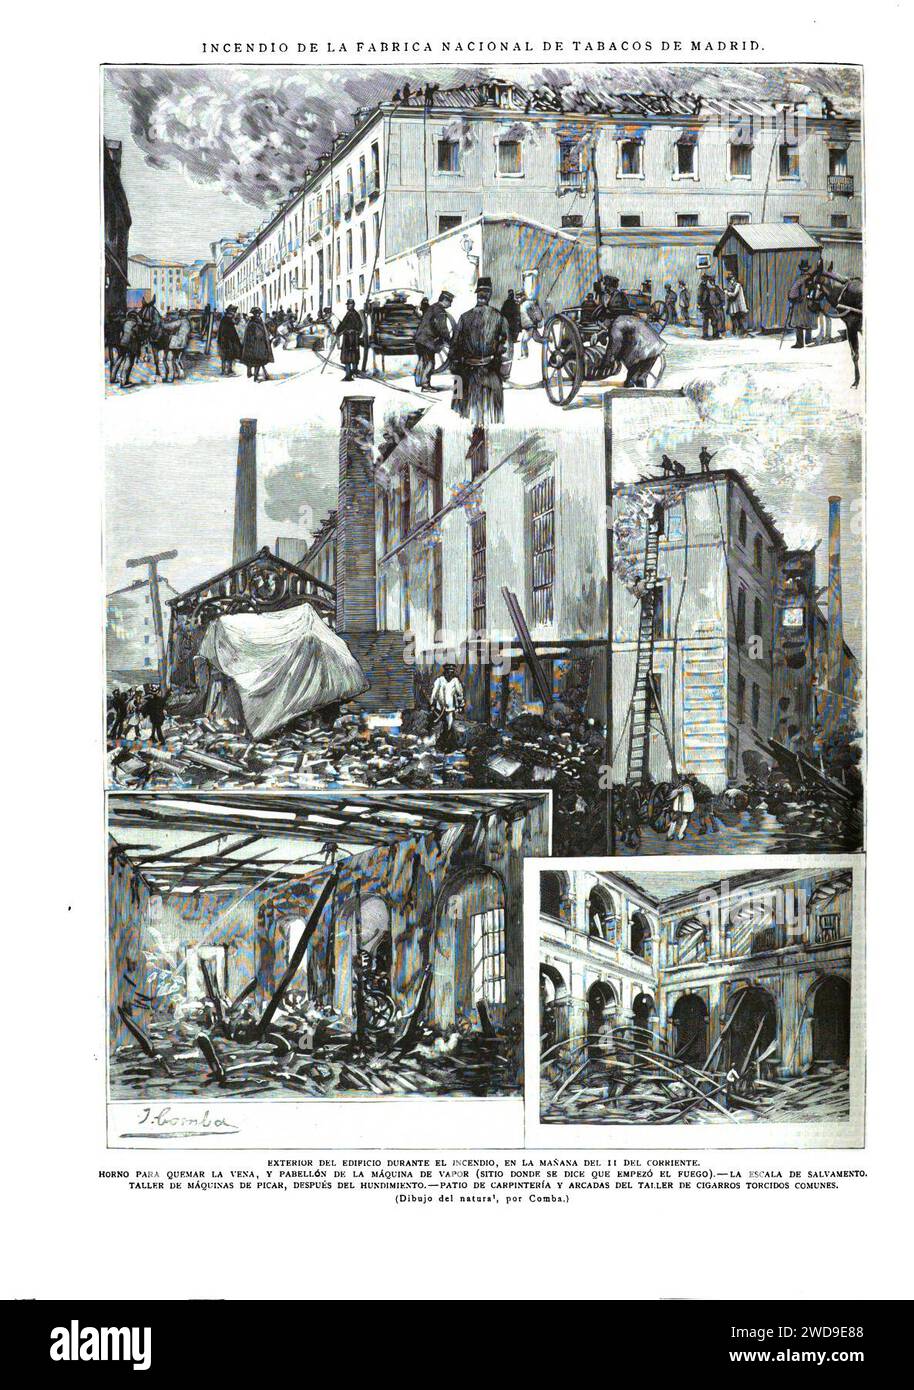 1890-11-15, La Ilustración Española y Americana, Incendio de la Fábrica Nacional de Tabacos de Madrid. Stock Photo